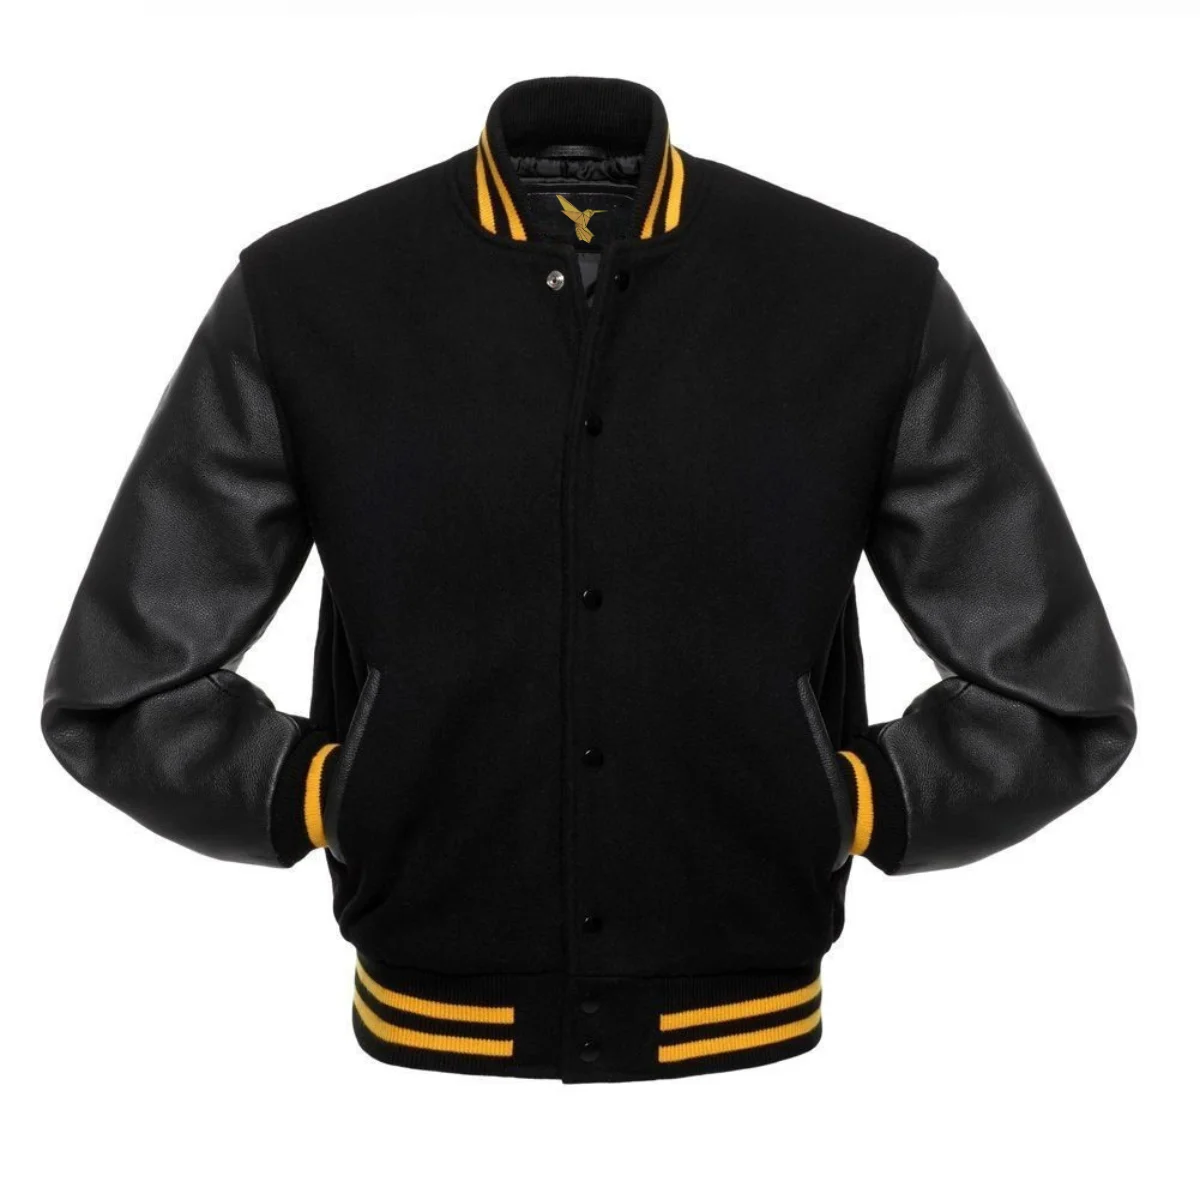 Front Image of Black Varsity Jacket